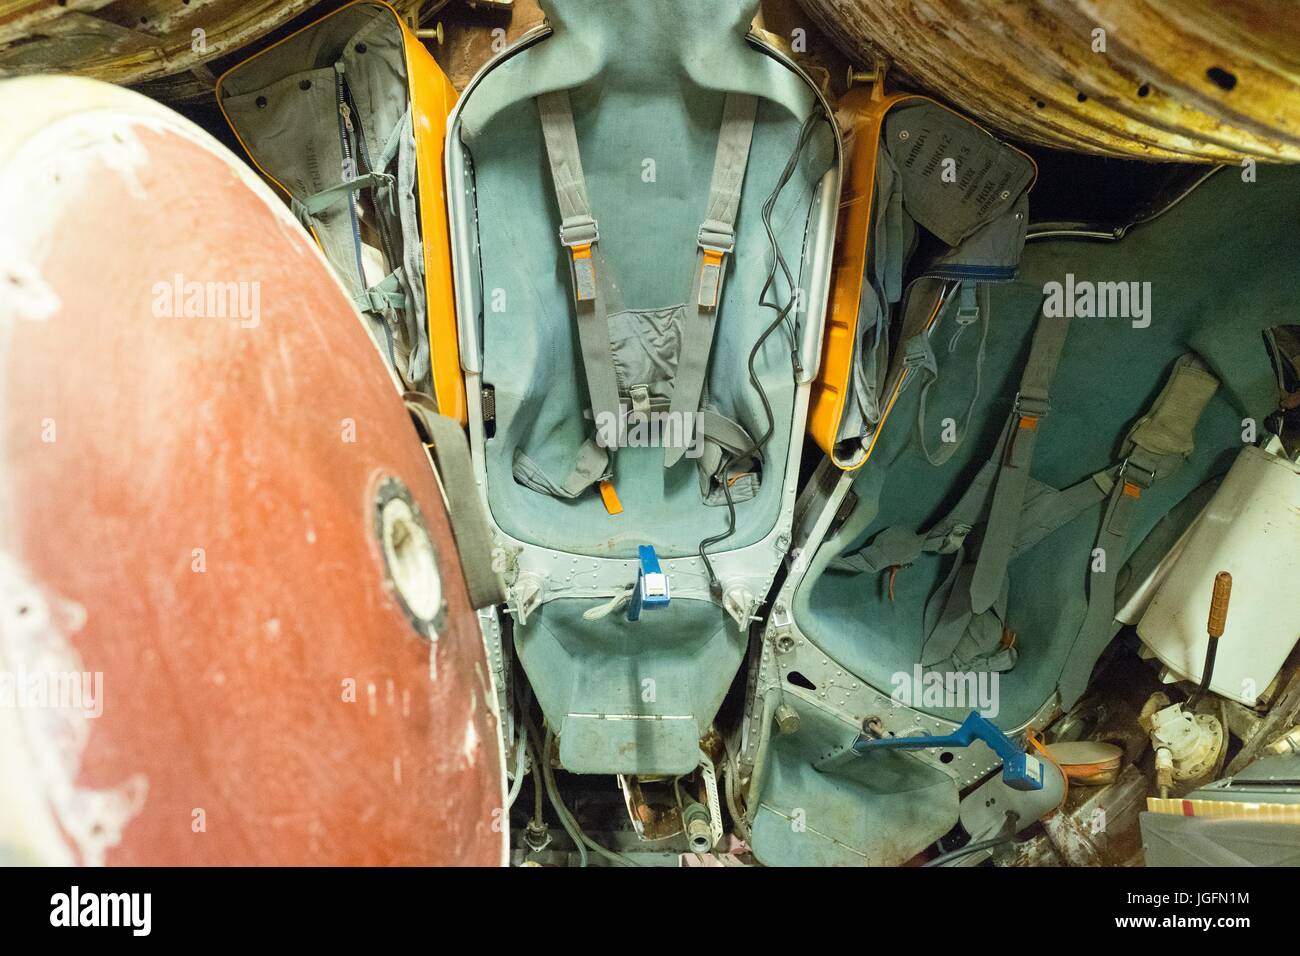 Intérieur d'une capsule spatiale russe Soyouz avec l'astronaute, sièges, éclosent et les contrôles visibles, 15 juin 2017. Banque D'Images